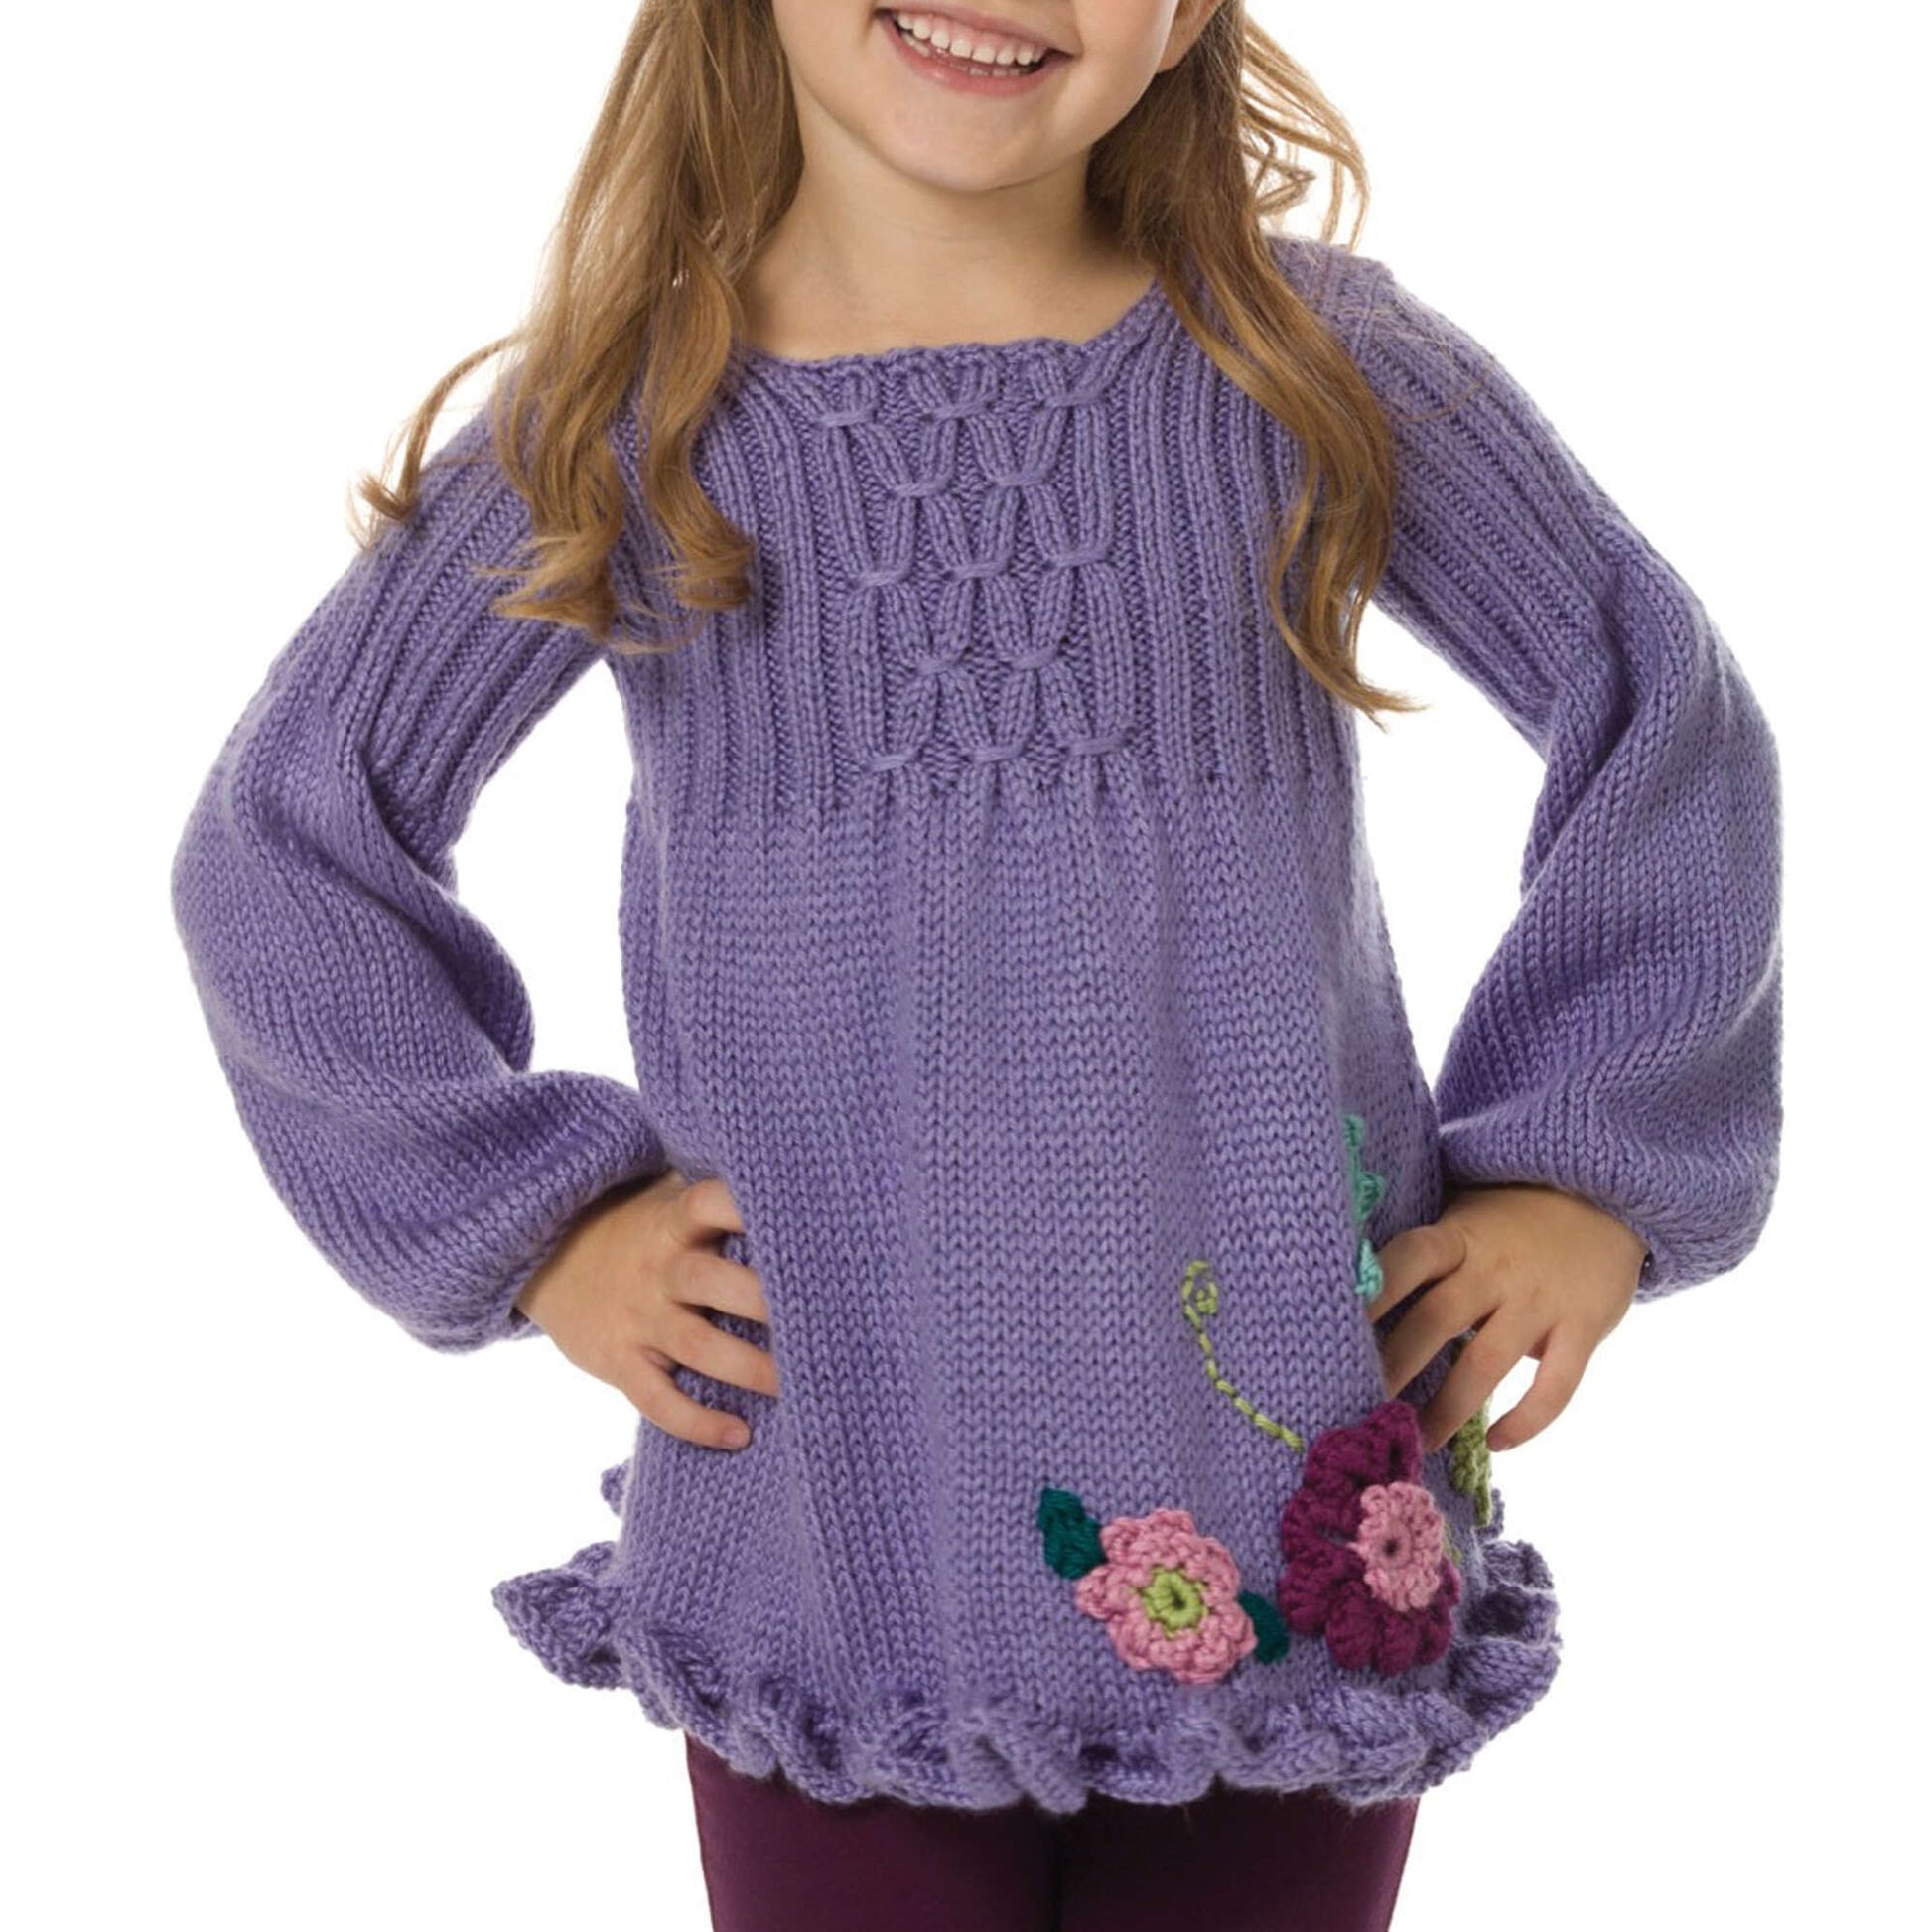 Free Caron Girl's Smocked Tunic Knit Pattern